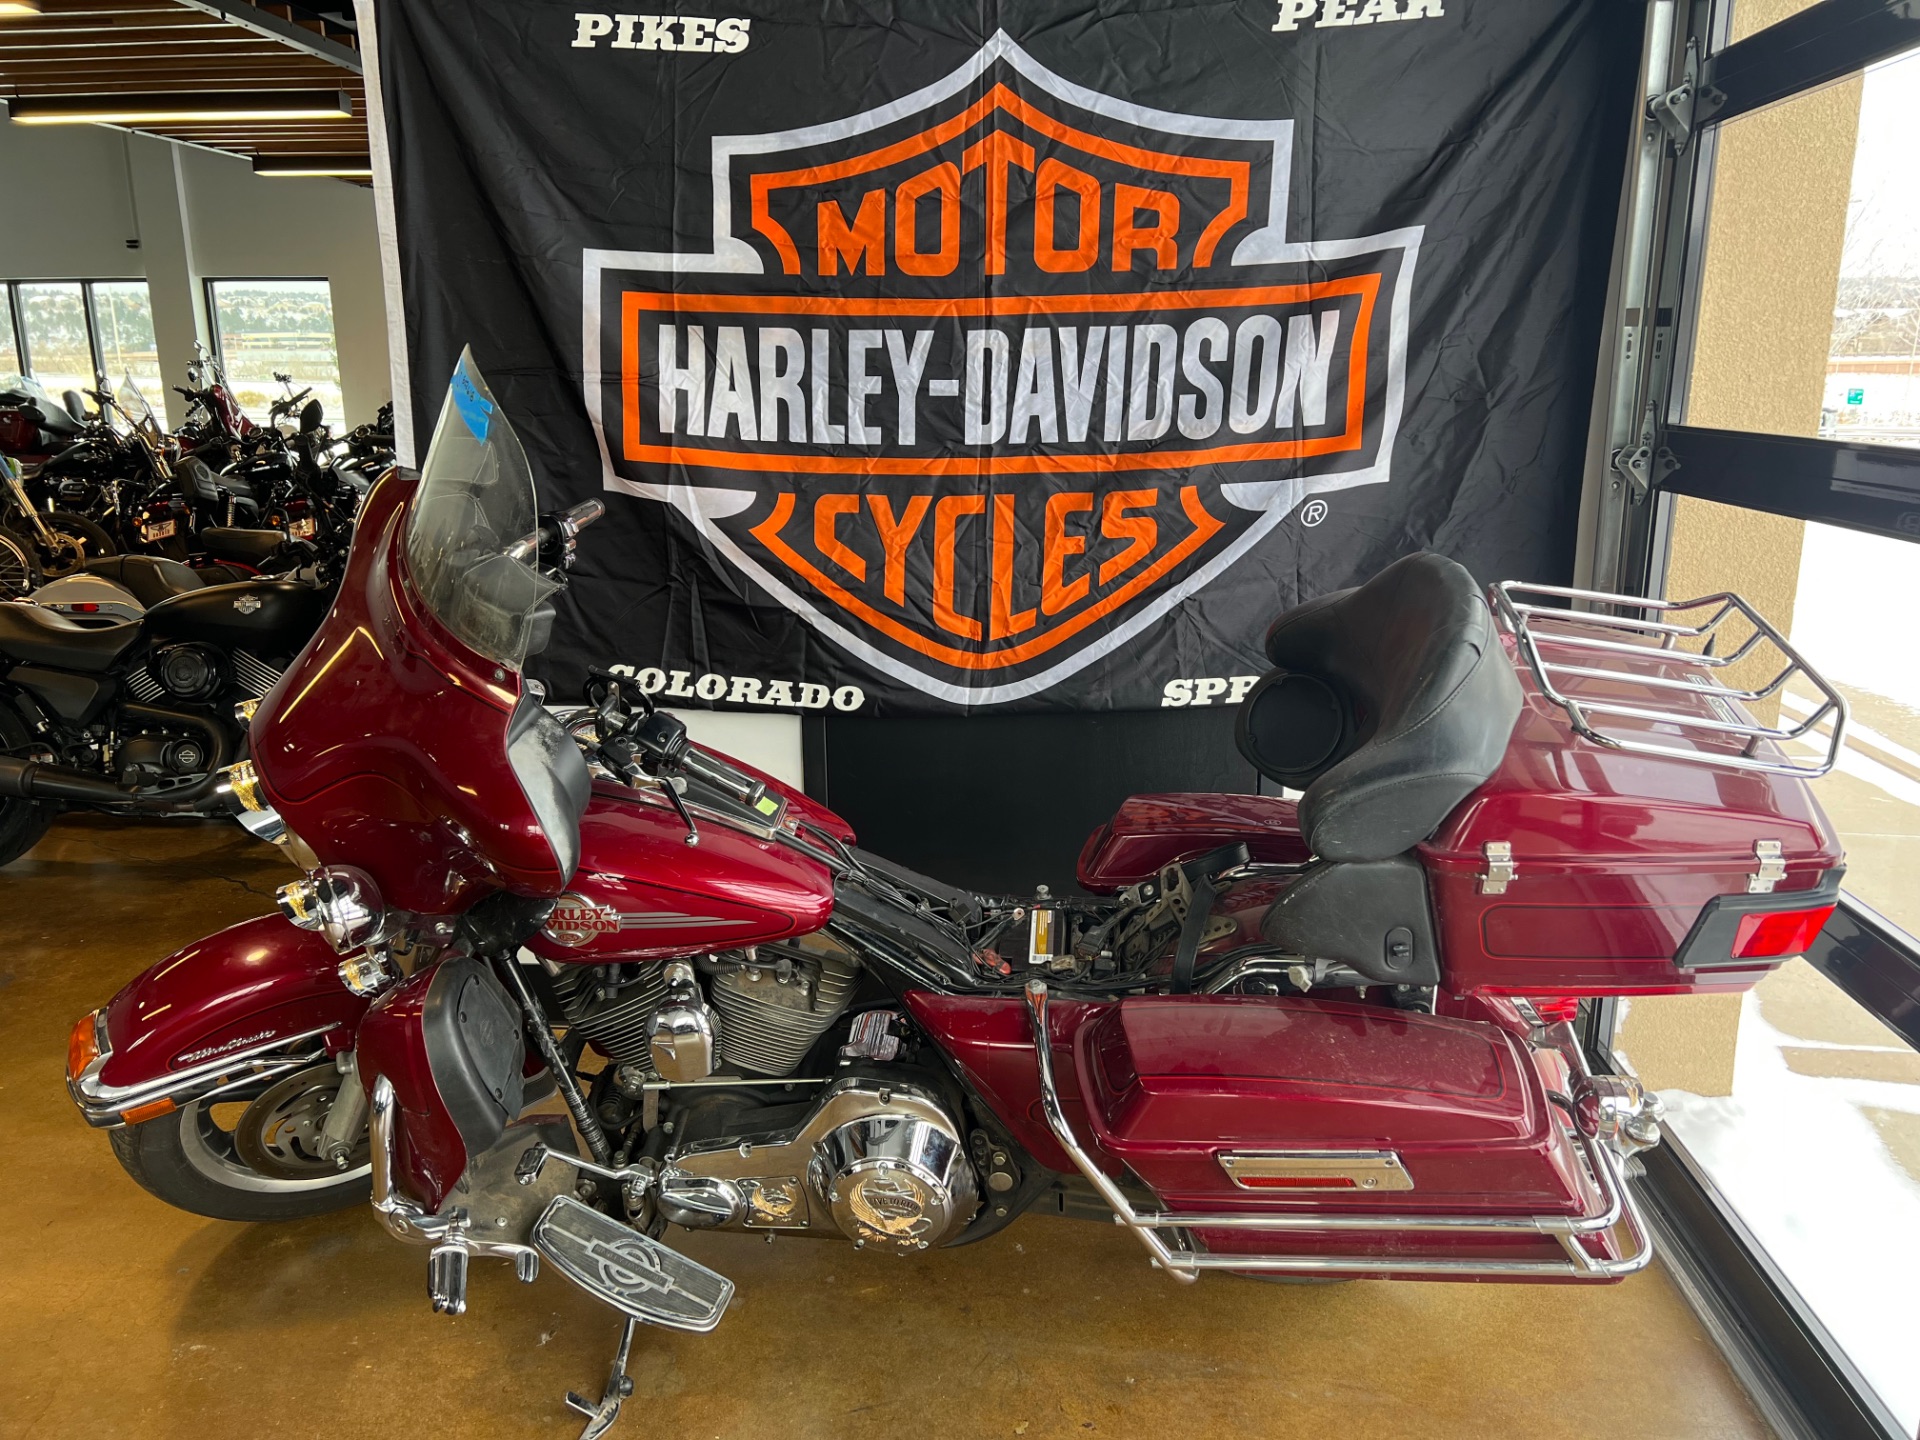 2006 Harley-Davidson Electra Glide® Classic in Colorado Springs, Colorado - Photo 5